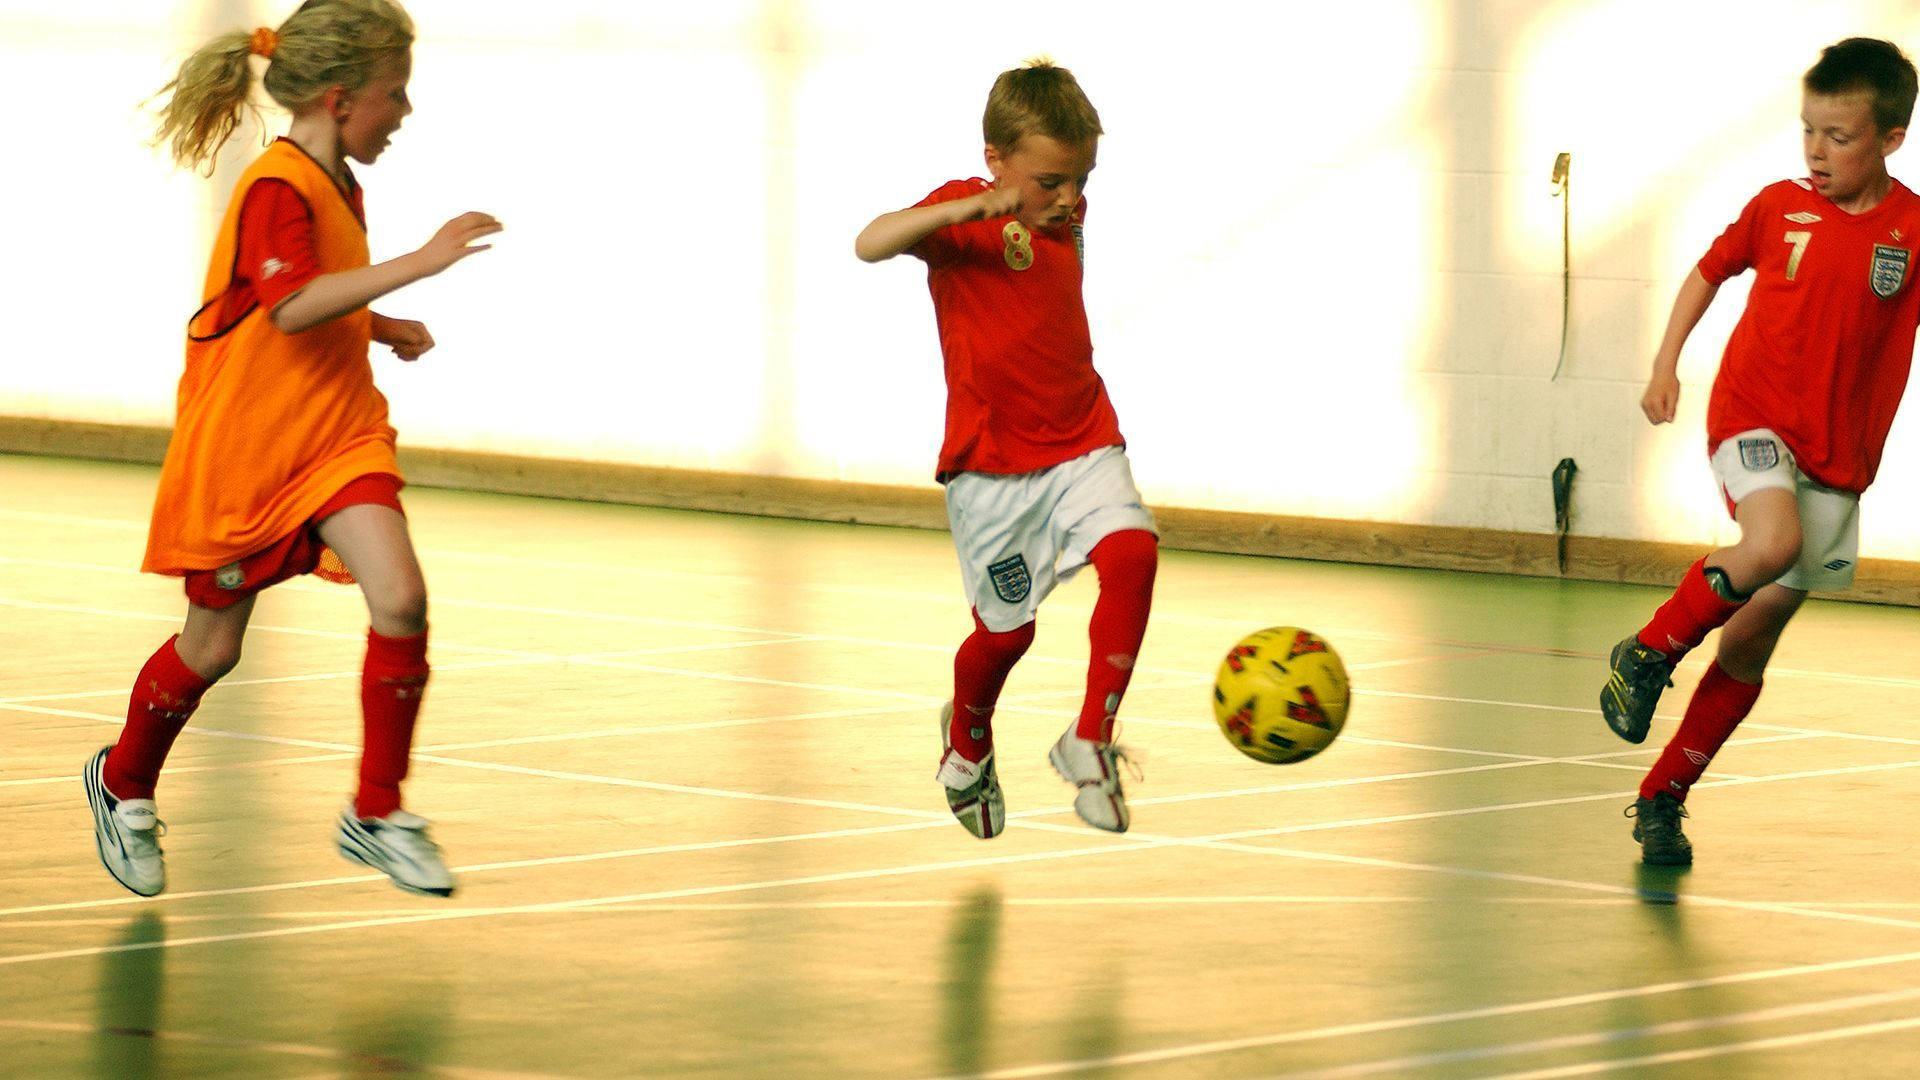 Football As Physical Education